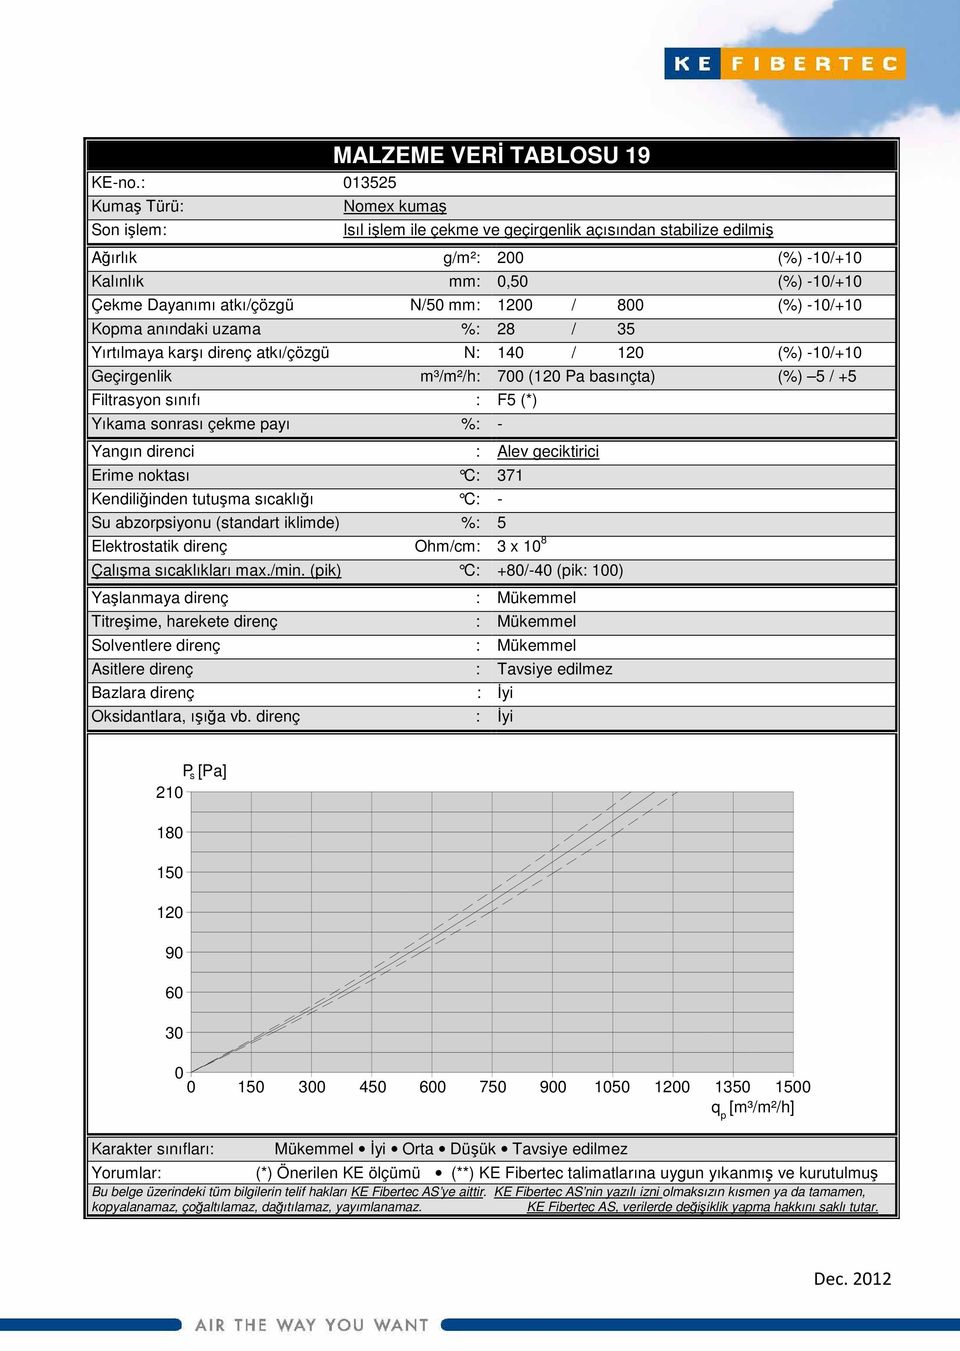 anındaki uzama %: 28 / 35 Yırtılmaya karşı direnç atkı/çözgü N: 14 / 12 (%) -1/+1 Geçirgenlik m³/m²/h: 7 (12 Pa basınçta) (%) 5 / +5 Filtrasyon sınıfı